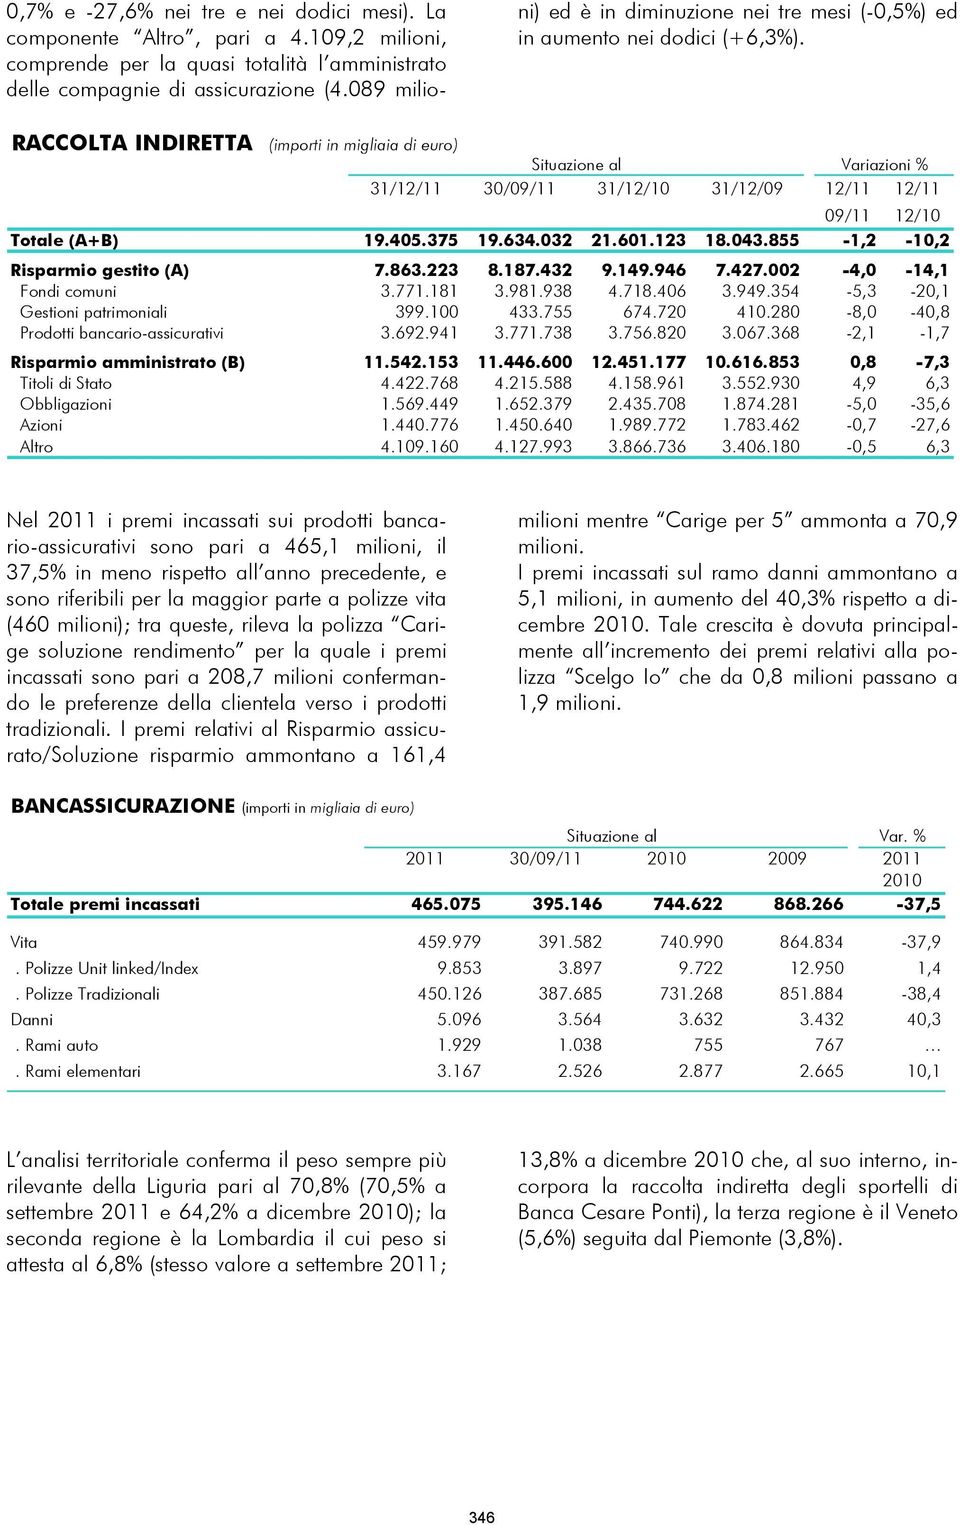 RACCOLTA INDIRETTA (importi in migliaia di euro) Situazione al Variazioni % 31/12/11 30/09/11 31/12/10 31/12/09 12/11 12/11 09/11 12/10 Totale (A+B) 19.405.375 19.634.032 21.601.123 18.043.